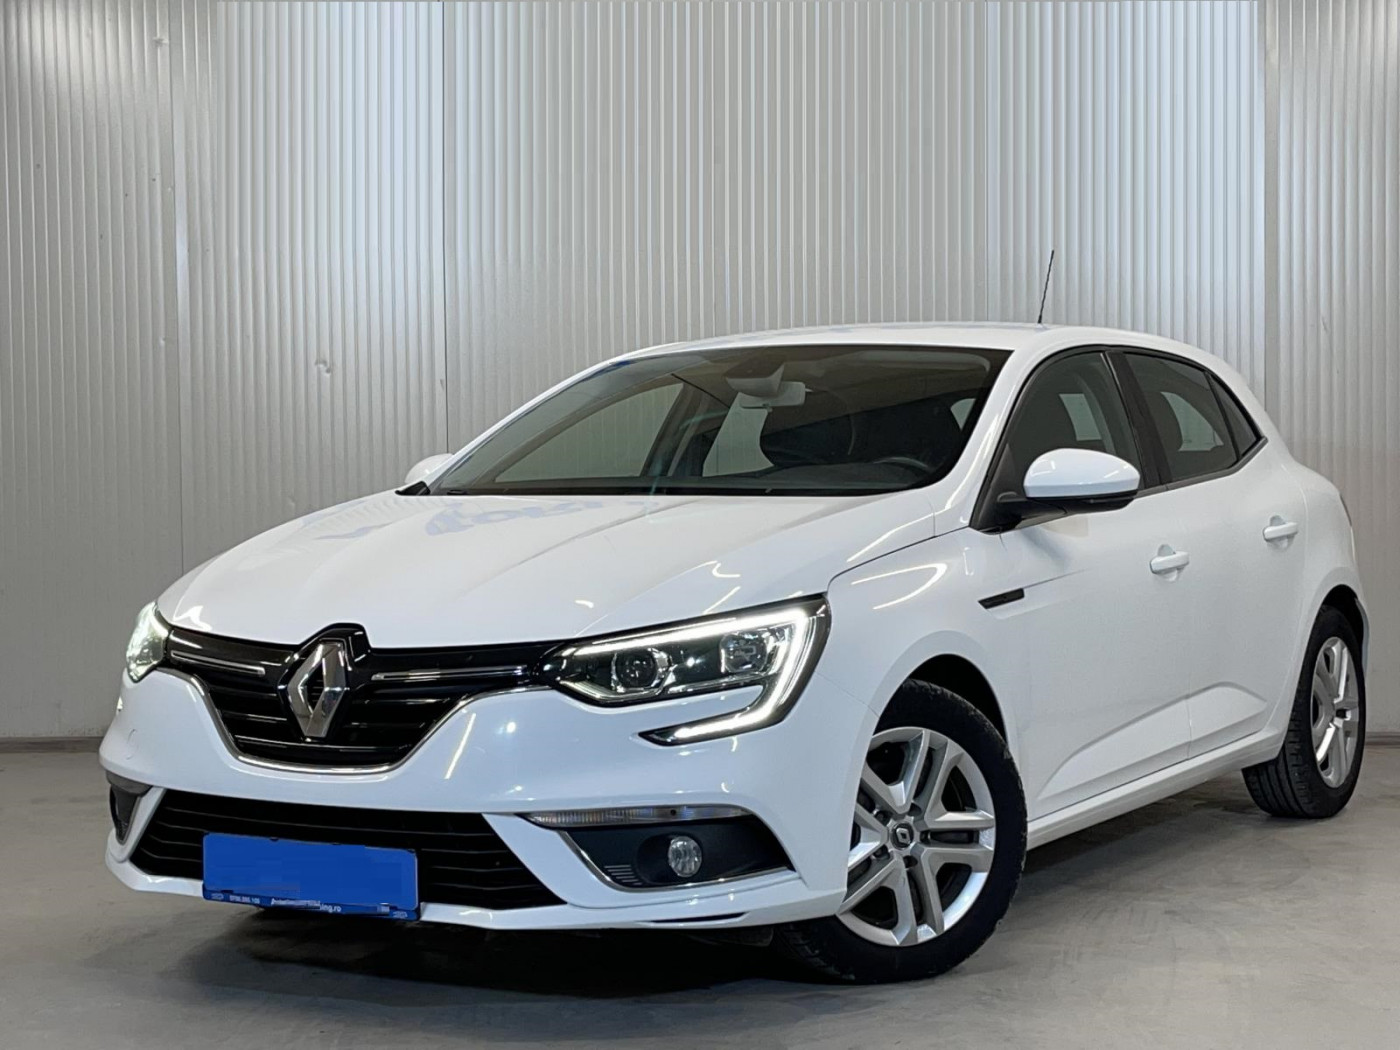 Renault Megane  110 CP   - 12490 €,   127050 km,  anul 2018,  culoare alb 